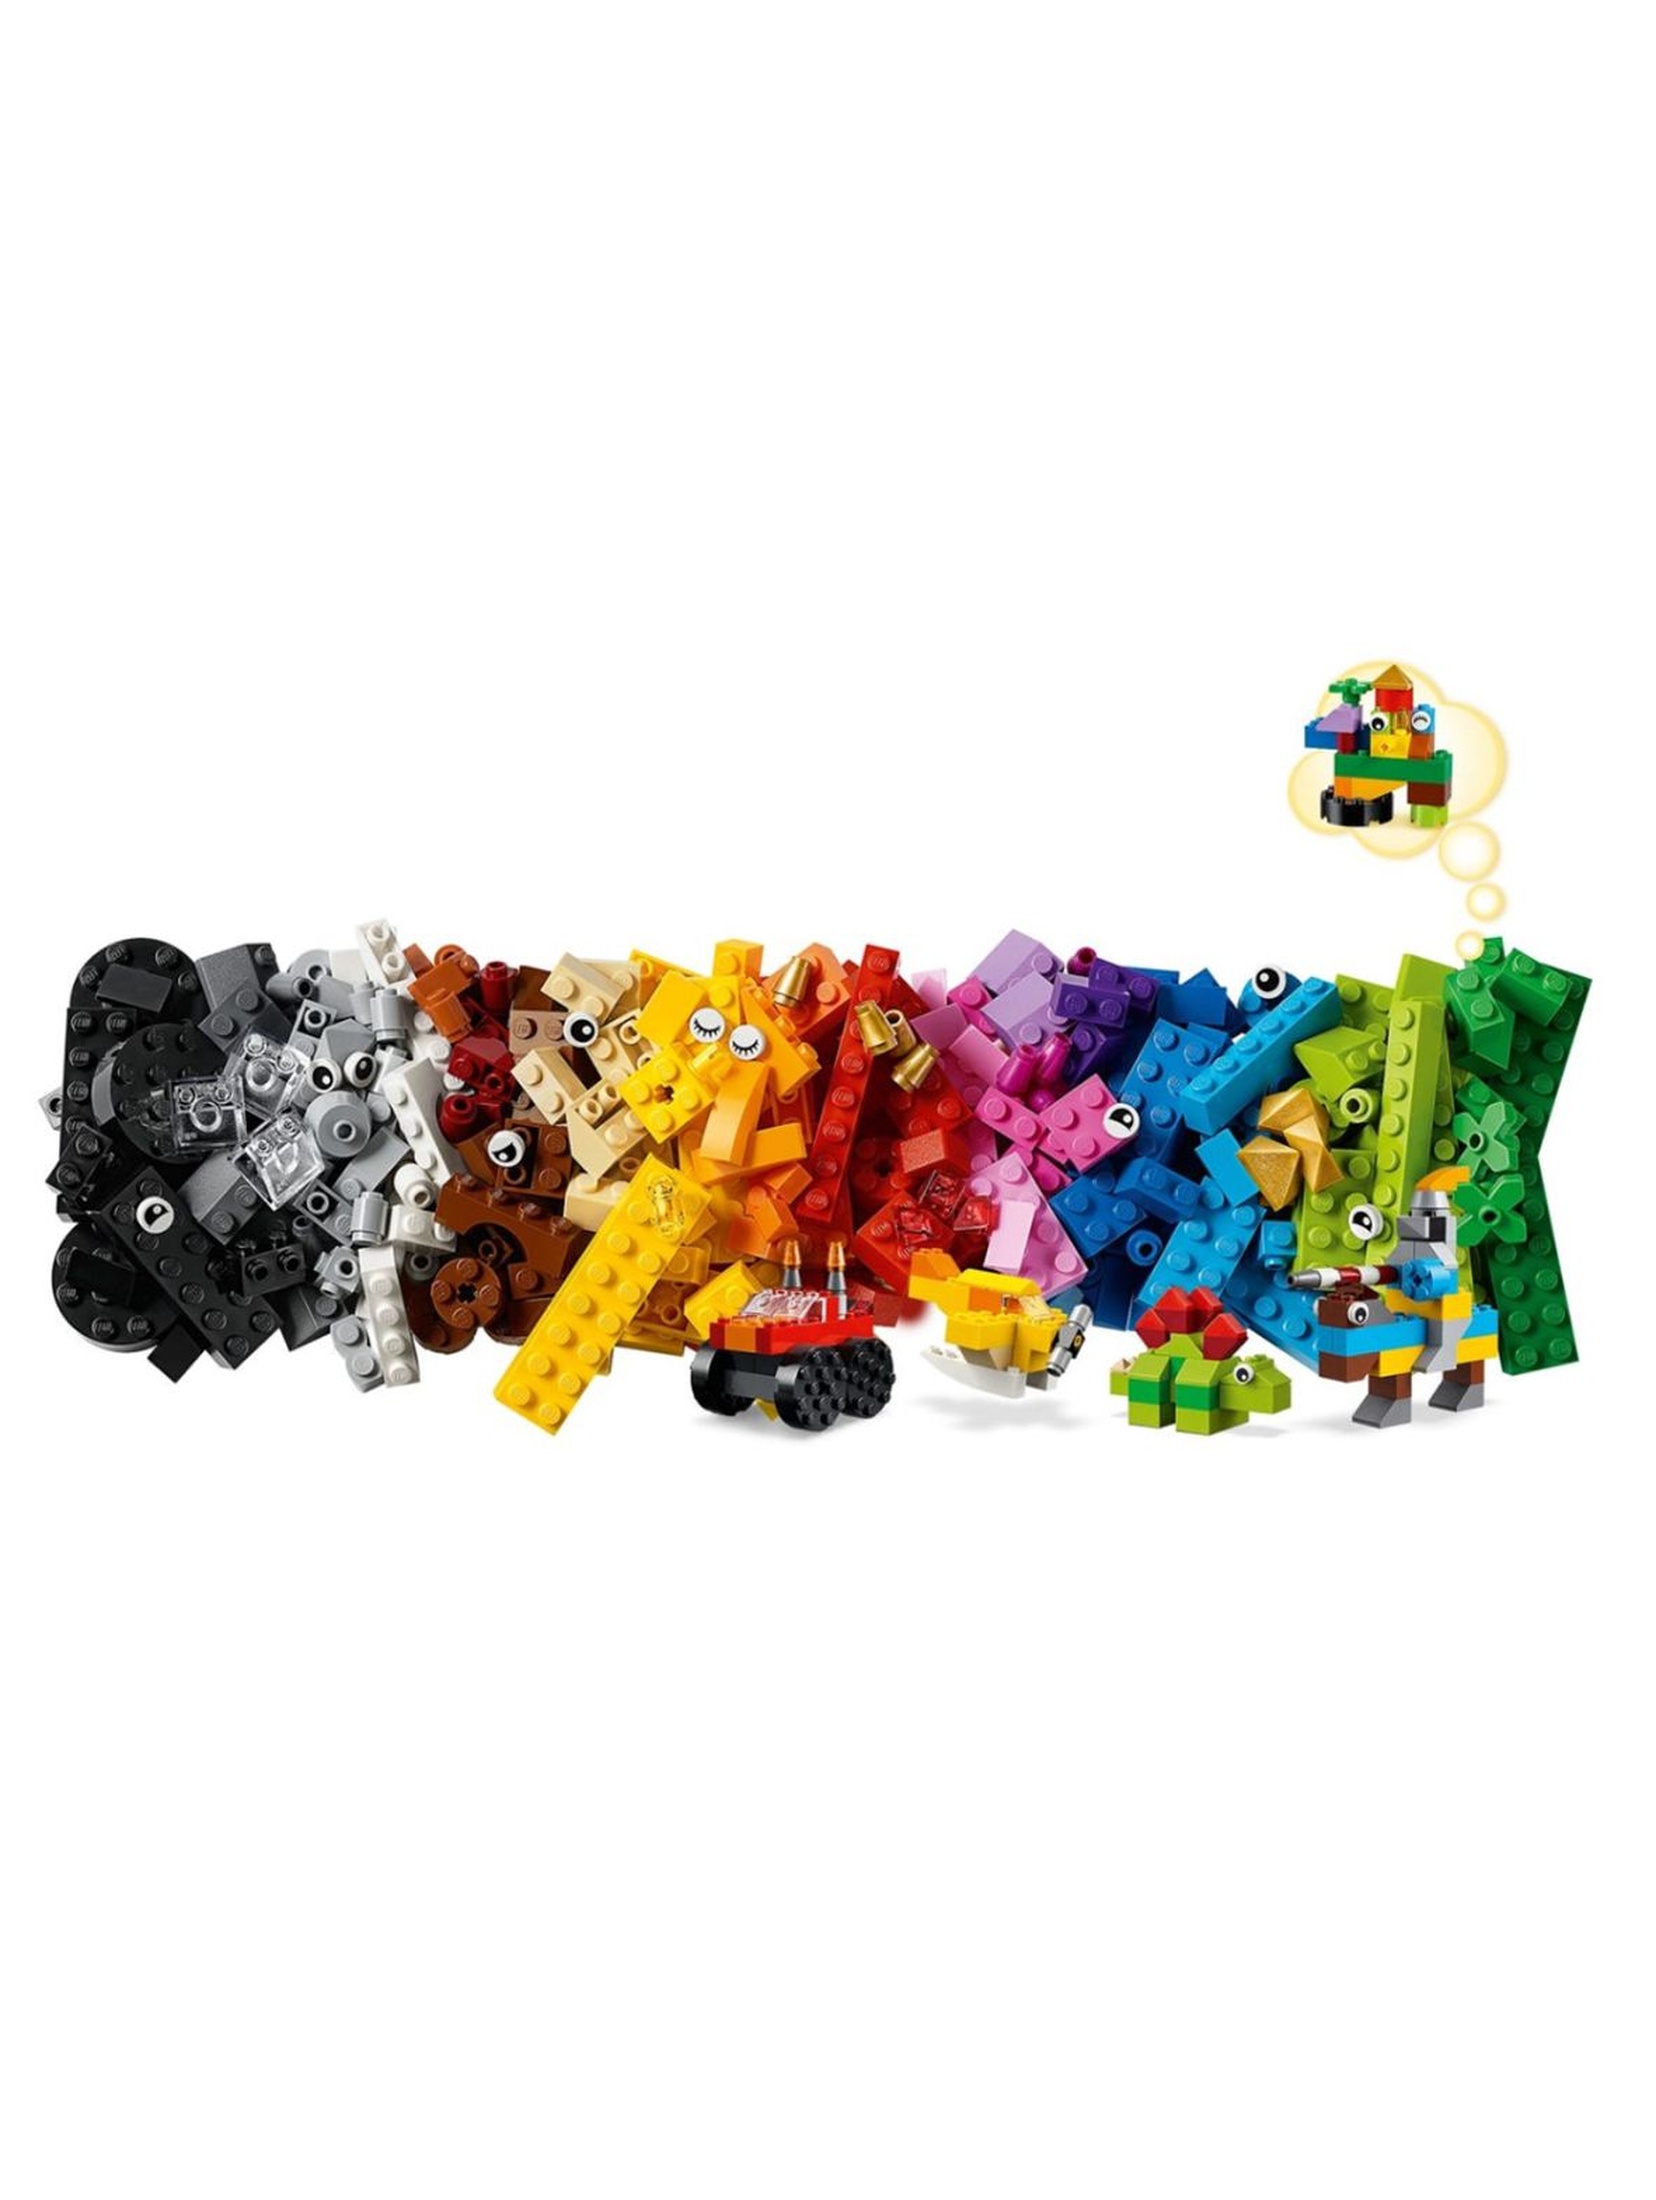 Klocki Lego Classic 11002  Podstawowe klocki - 300 elementów wiek 4+